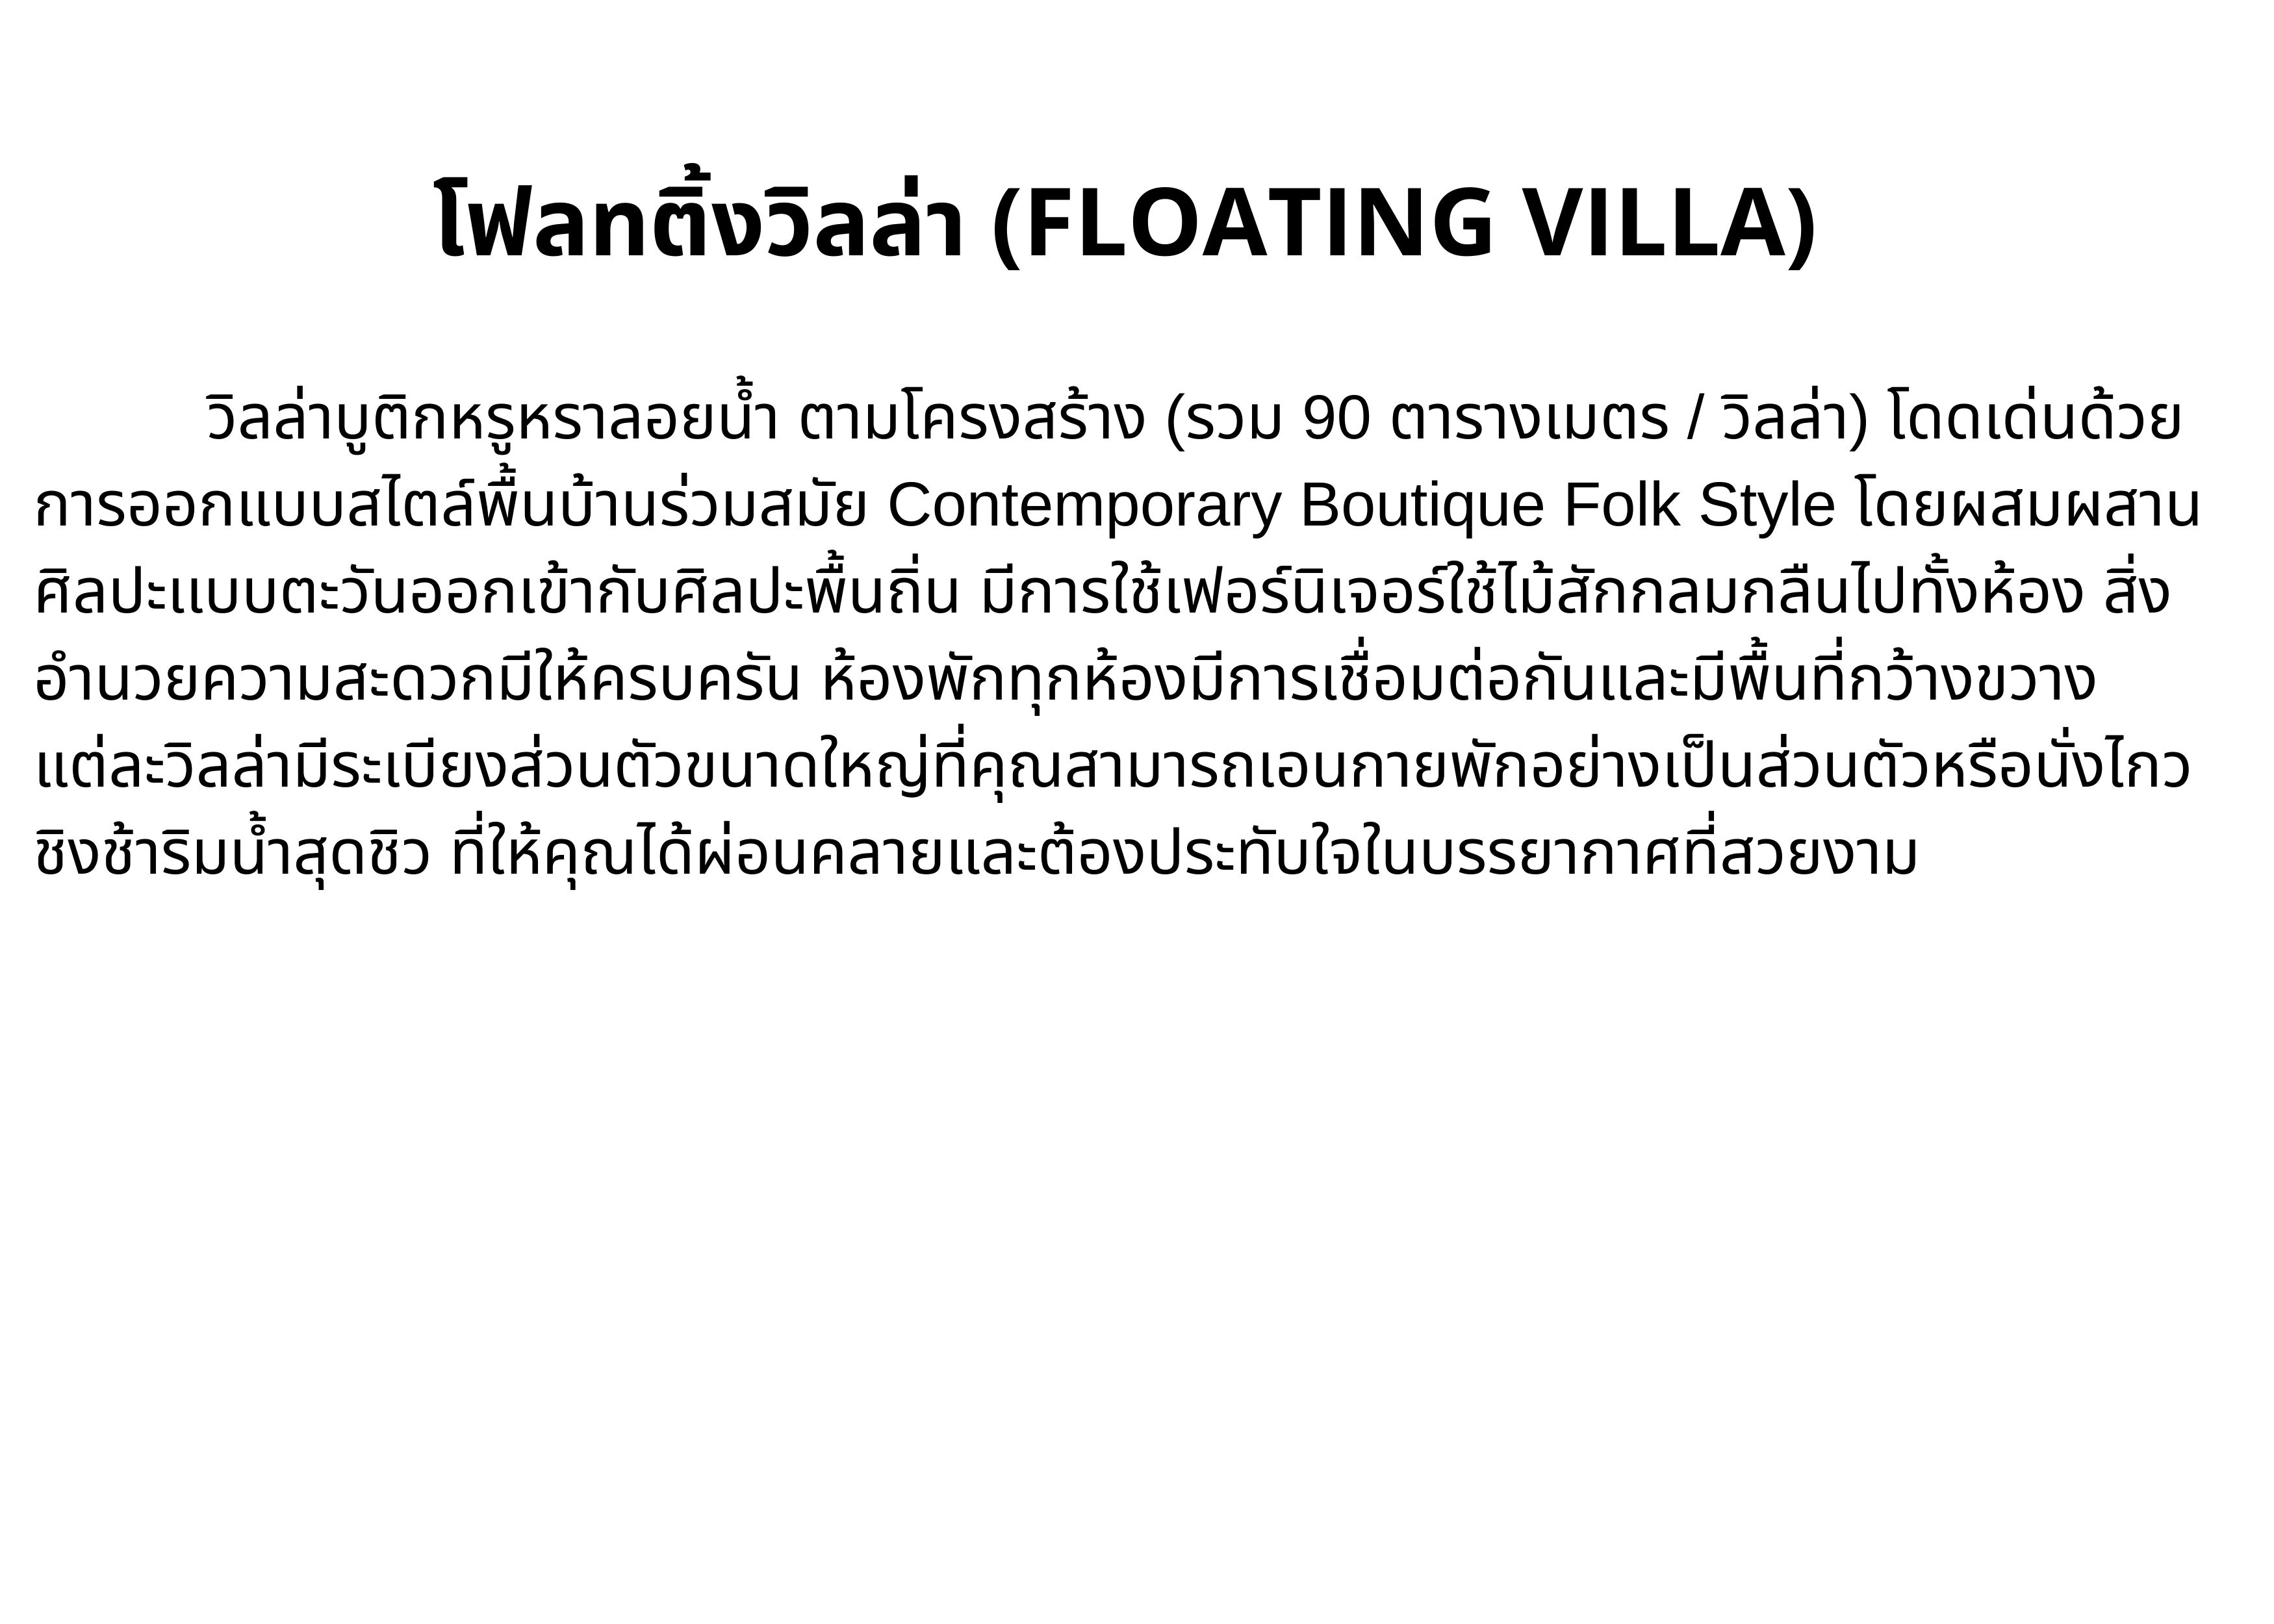 ข้อมูลประกอบของ [E-vo] The Float House River Kwai, กาญจนบุรี - เข้าพักได้ถึง 31 ต.ค. 66 ห้อง Floating Villa 1 คืน พร้อมอาหารเช้า 2 ท่าน